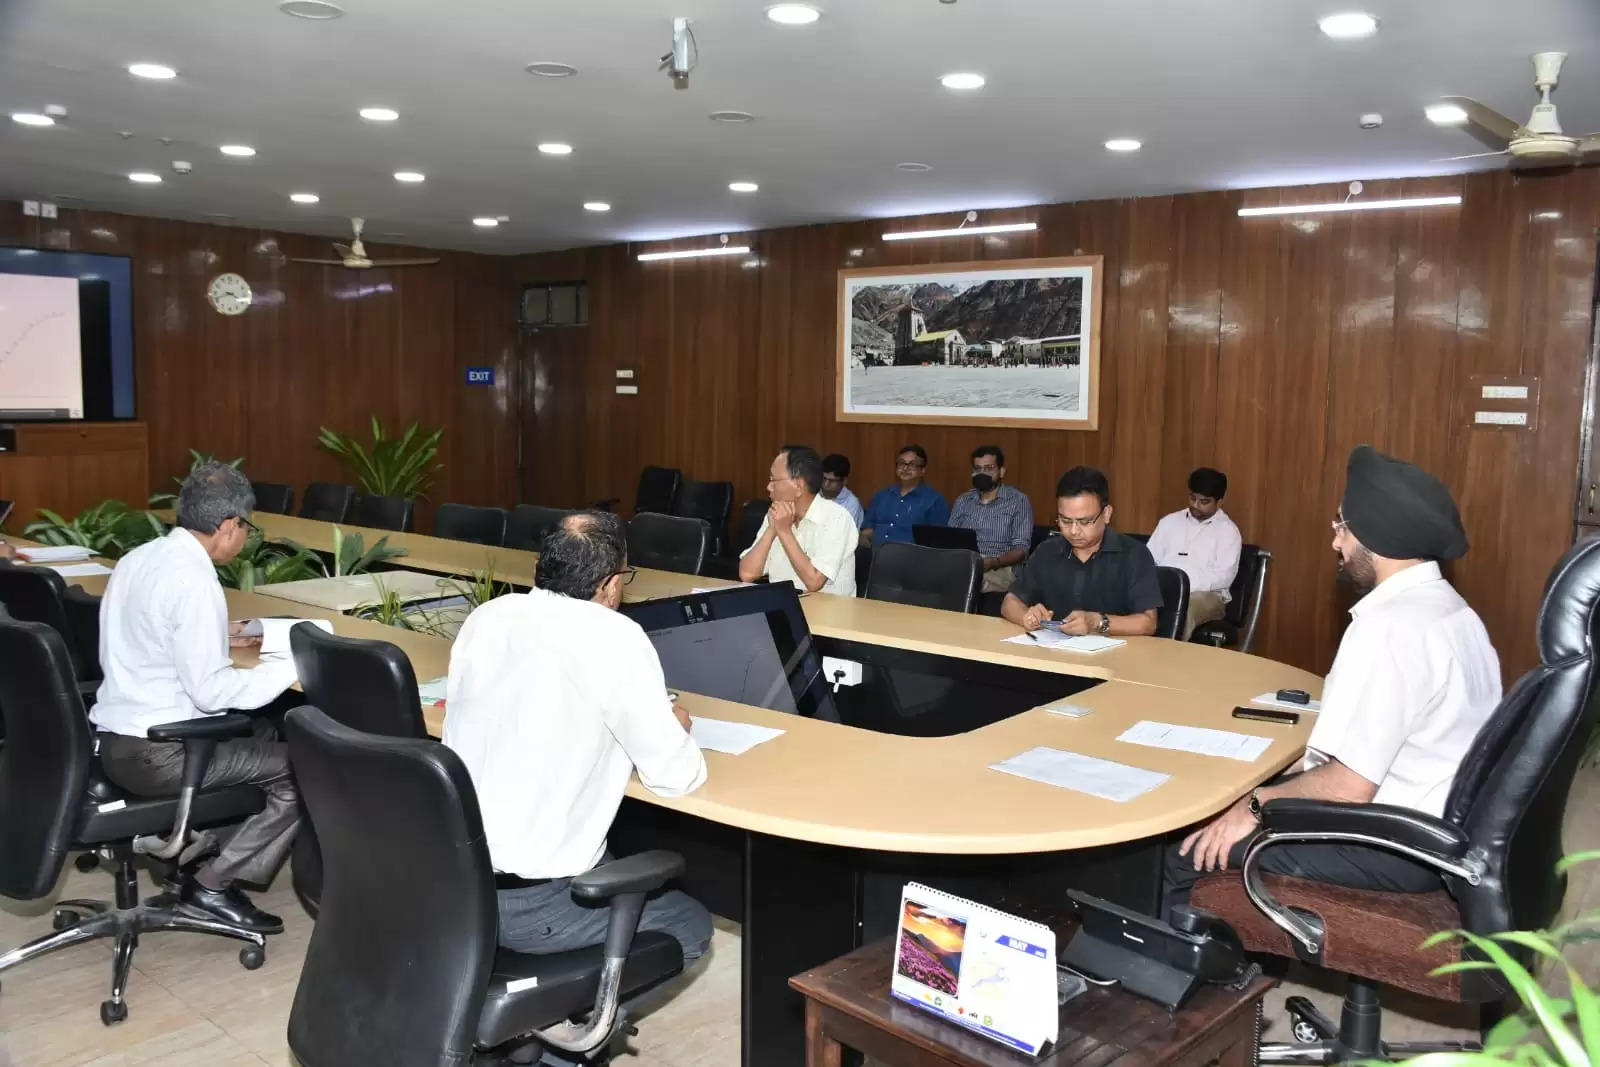 मुख्य सचिव डॉ. एस. एस. संधु की अध्यक्षता में प्रधानमंत्री कृषि सिंचाई योजना की राज्य स्तरीय अनुमोदन समिति की बैठक हुई संपन्न